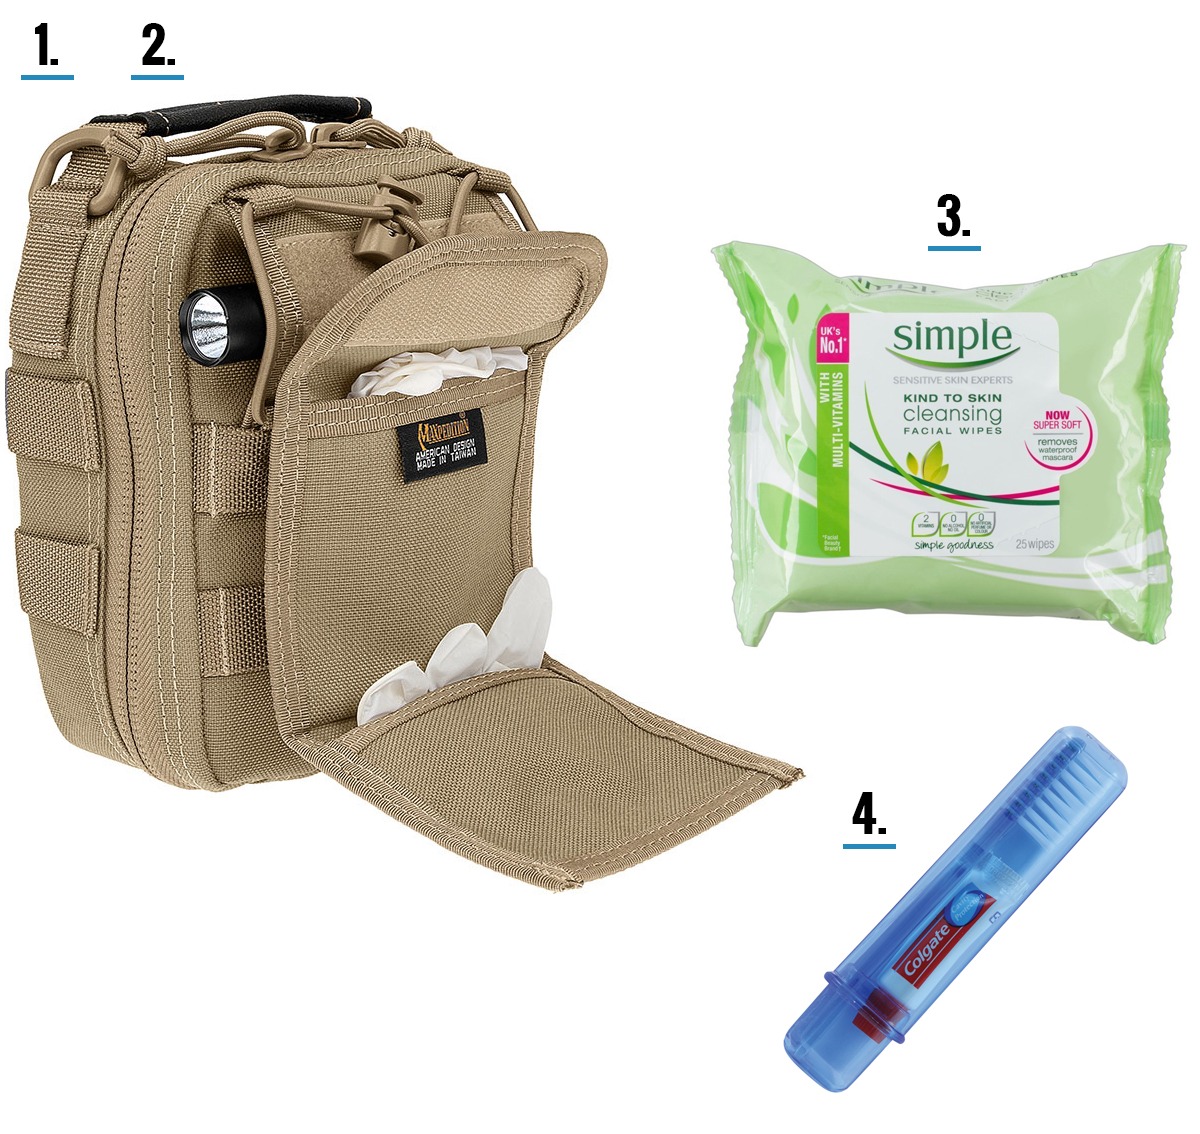 Bug out bag essentials - health